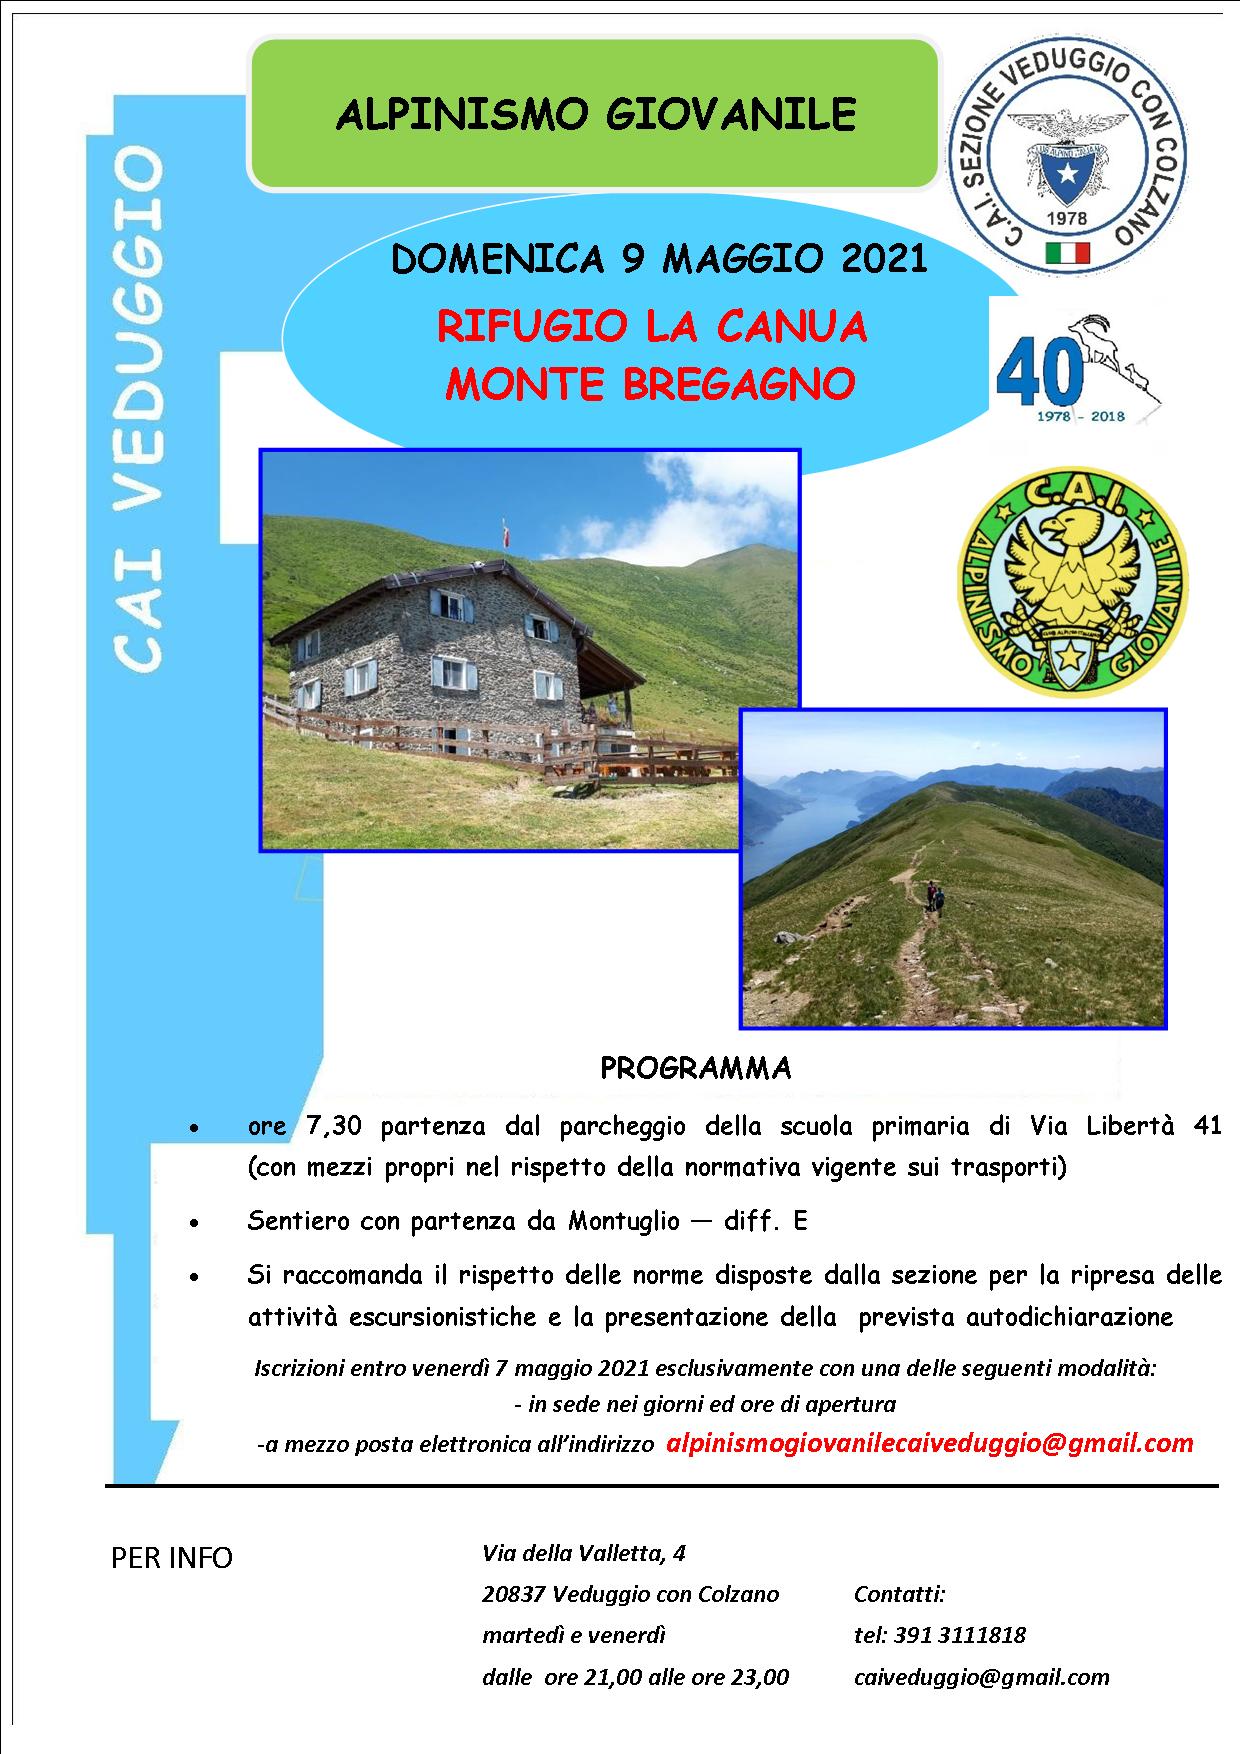 Domenica 9 maggio 2021 – Rifugio La Canua/Monte Bregagno – Alpinismo Giovanile